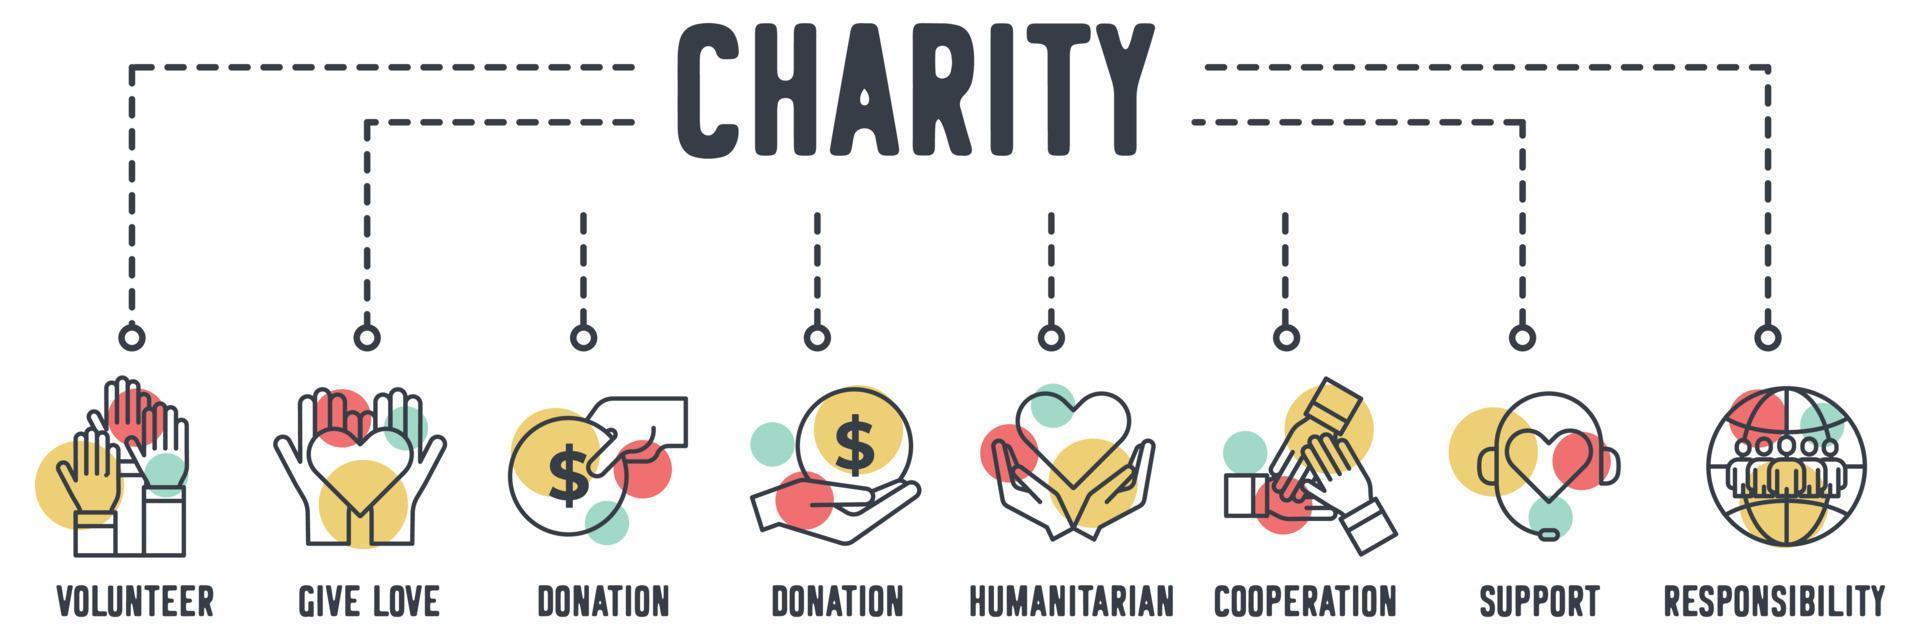 icône web de bannière de charité. bénévole, donner de l'amour, don, humanitaire, coopération, soutien, concept d'illustration vectorielle de responsabilité sociale. vecteur